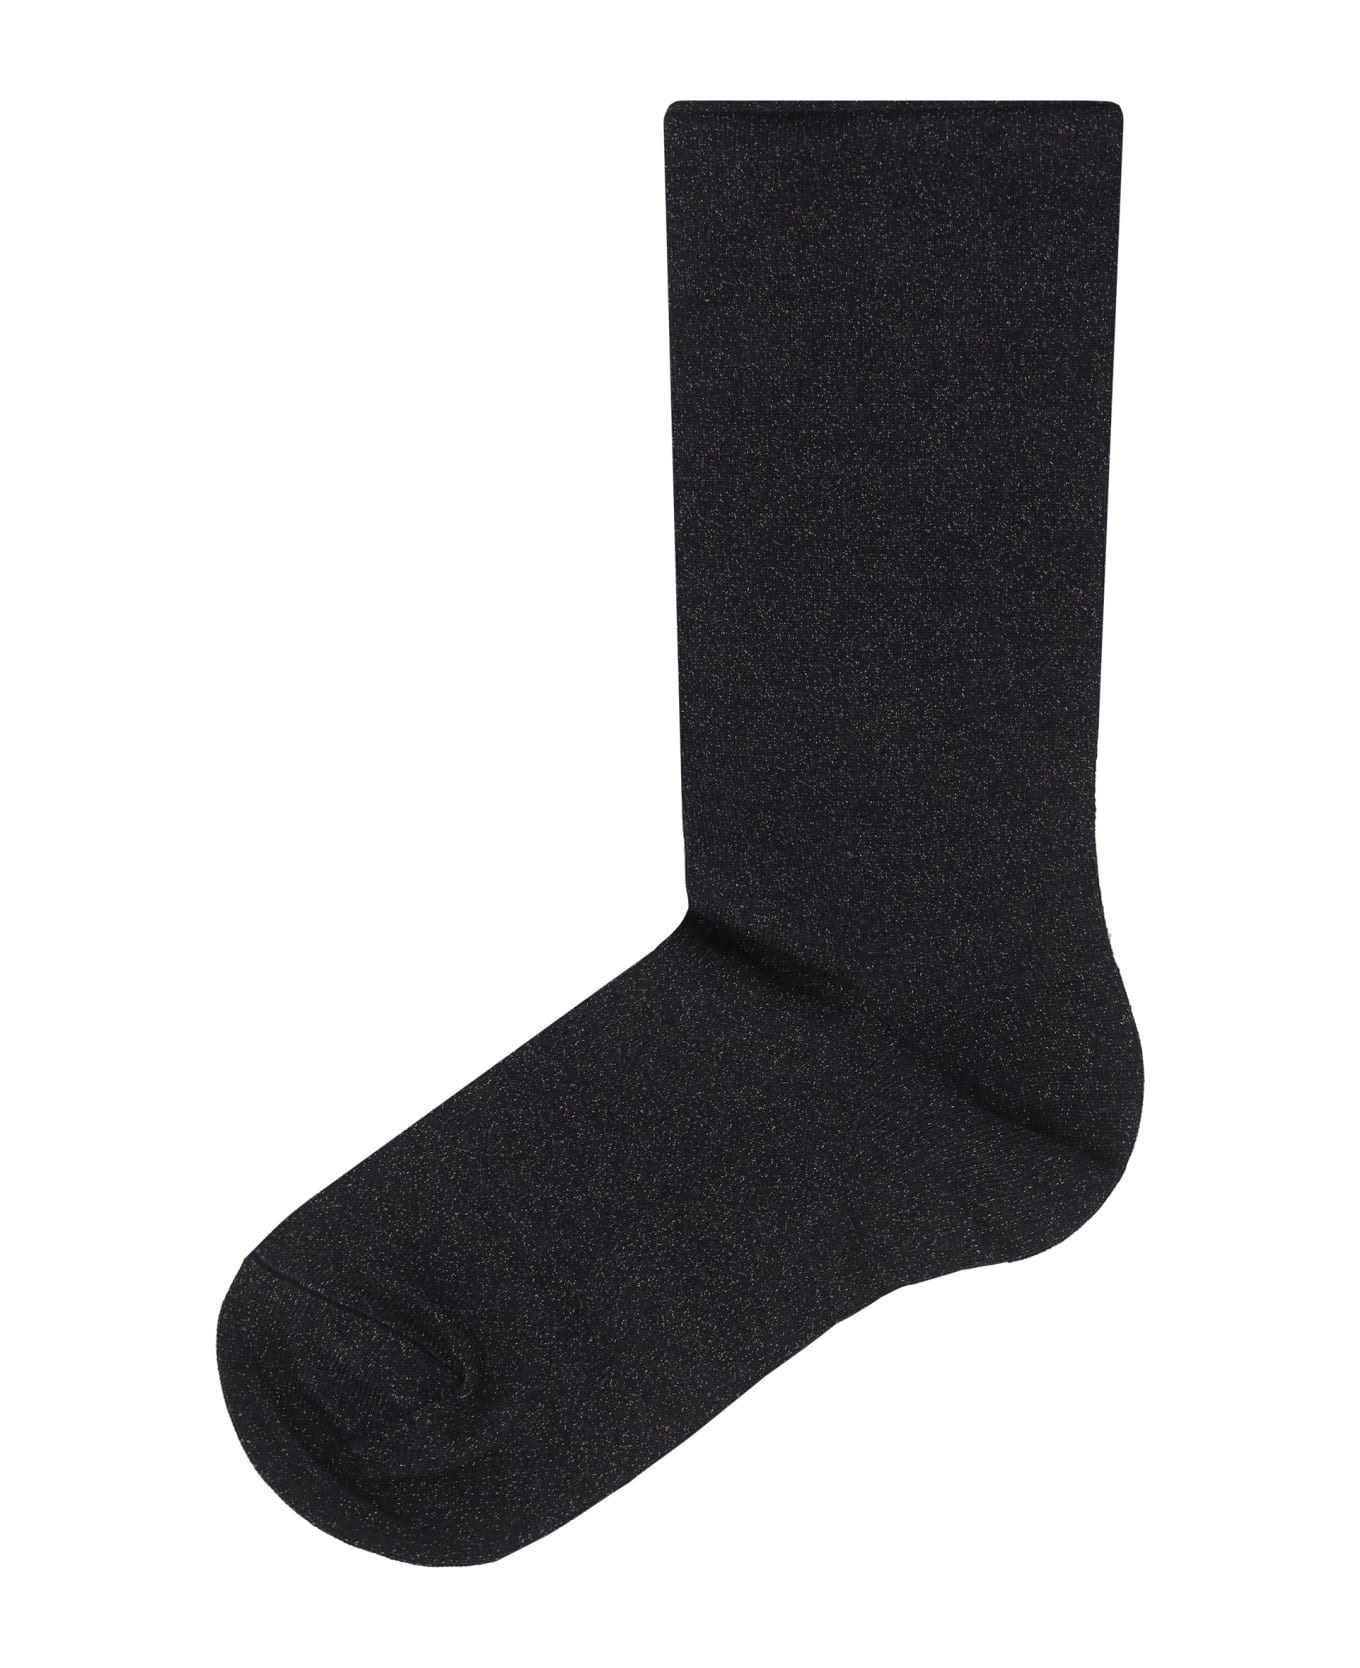 Brunello Cucinelli Socks - Black Stone